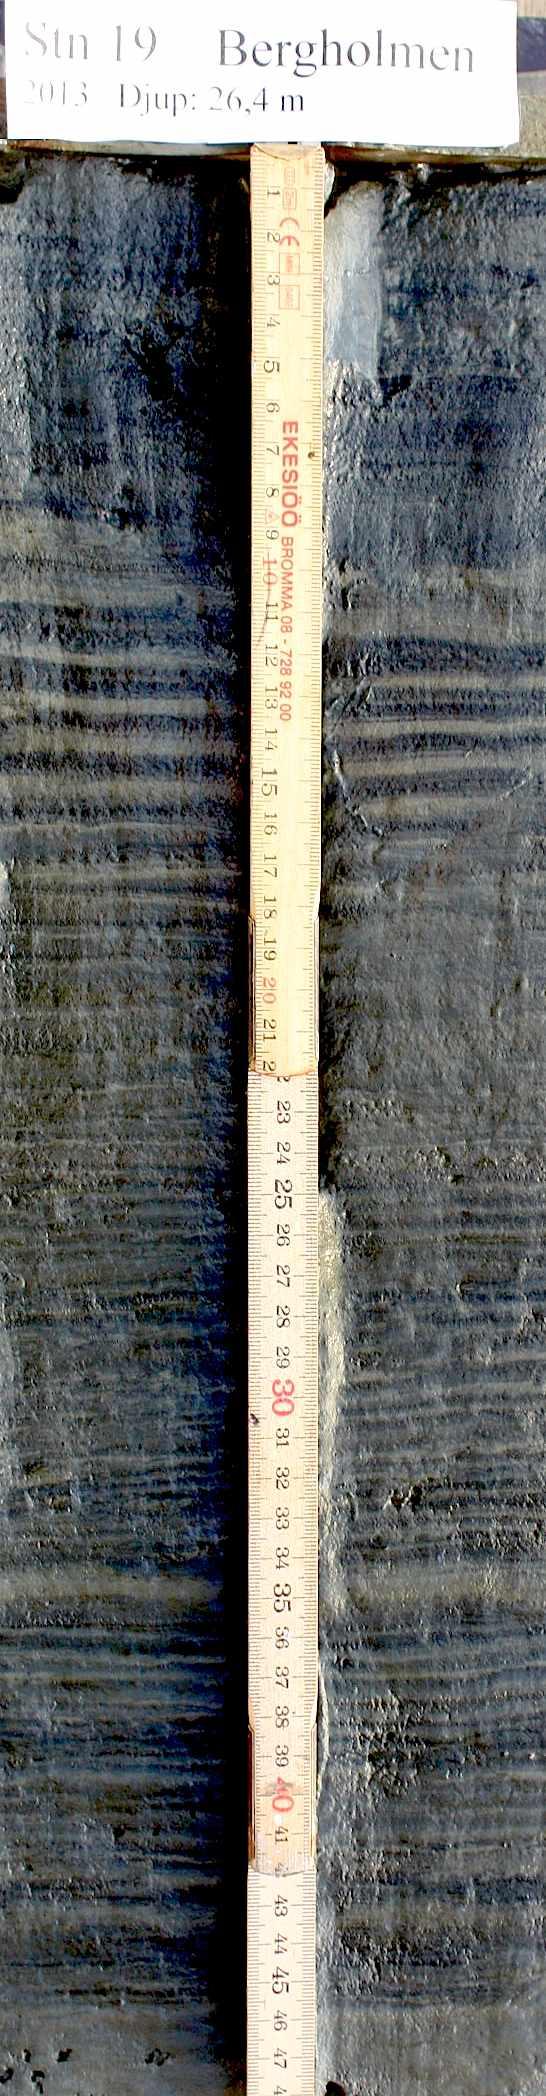 Typiska halter av Cs- 137 Profilen är närmast idealisk Avlagringen verkar vara ostörd (Märklig laminering 10-18 cm) 1987 10 cm > 0.